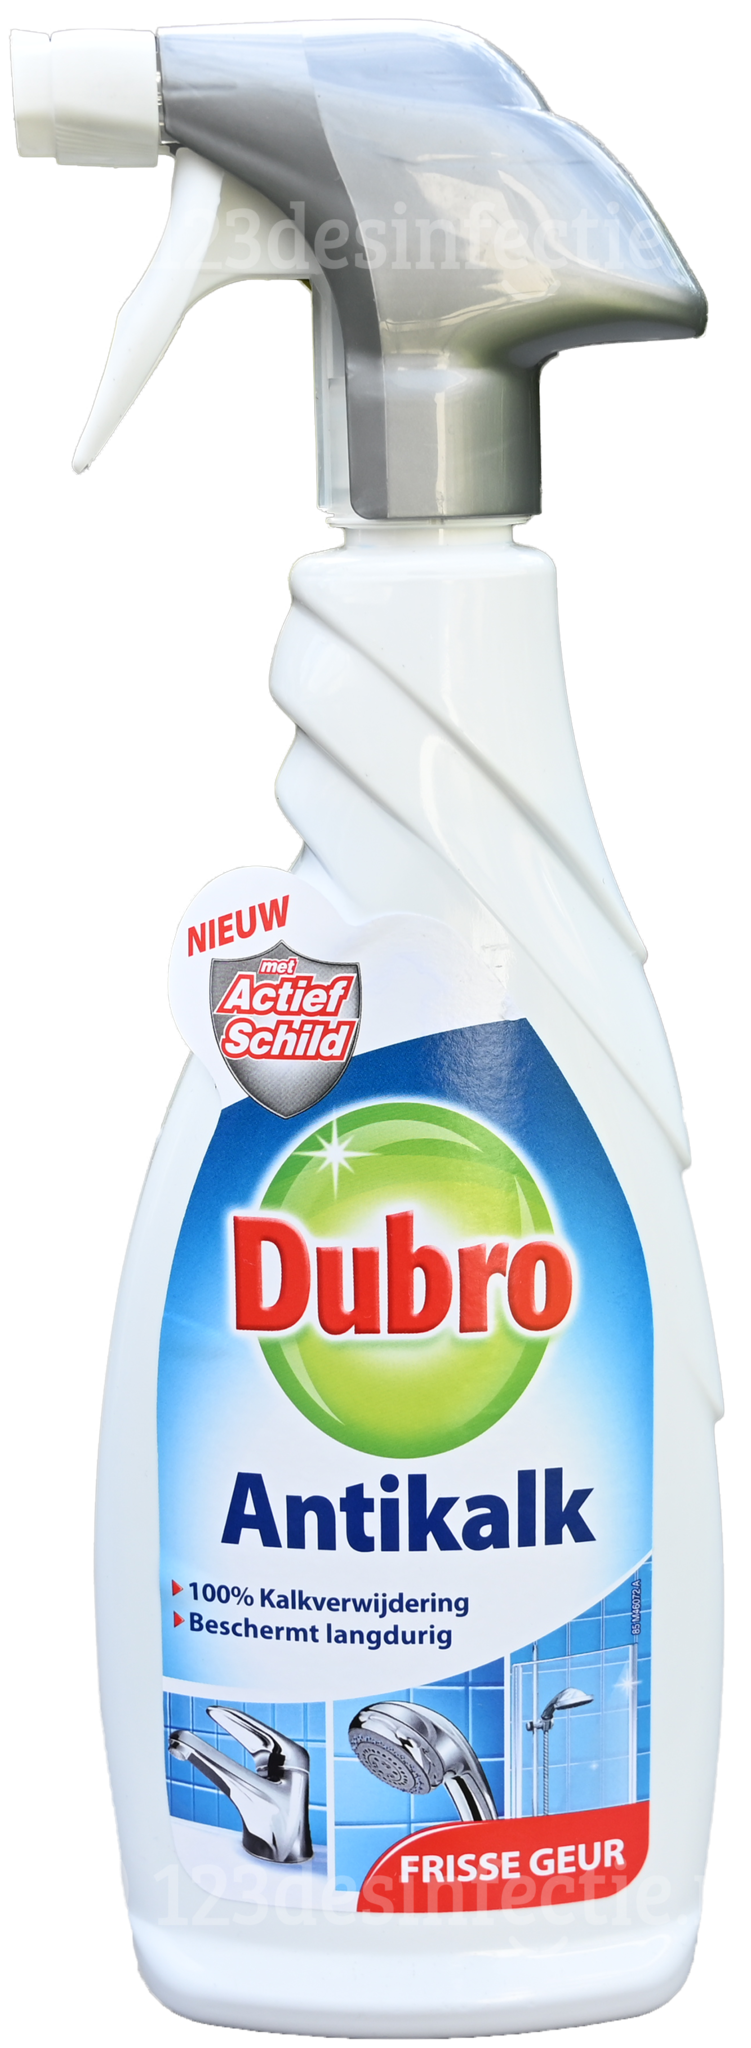 Onmogelijk halfgeleider mengen Dubro Antikalk spray - kalkverwijderaar voor de badkamer - 650 ml -  123desinfectie.nl